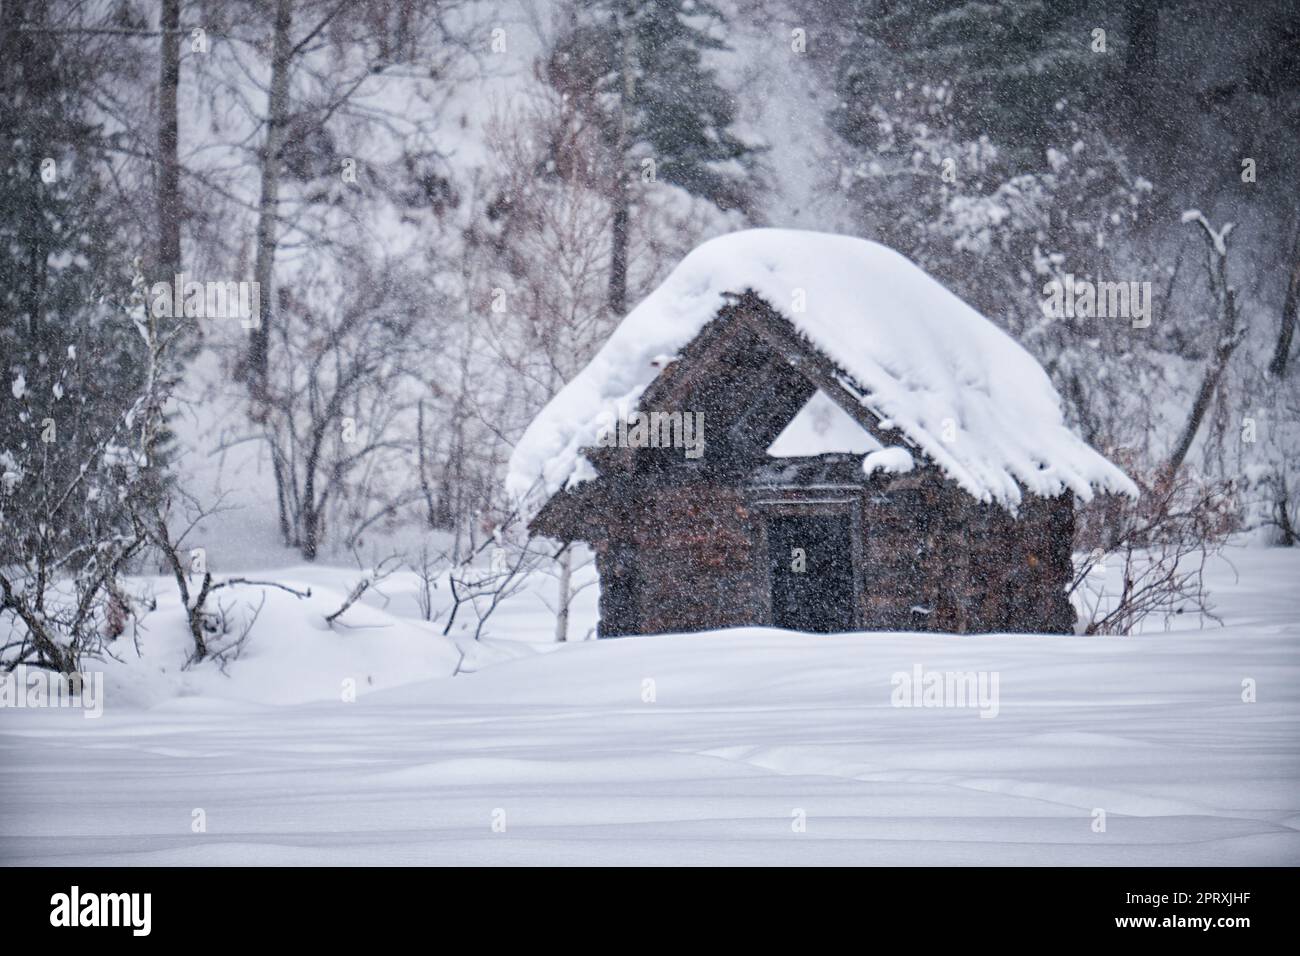 Vecchia casa in legno abbandonata. Il tetto è ricoperto da uno spesso strato di neve. Altai nella stagione invernale. Siberia, Russia. Foto Stock